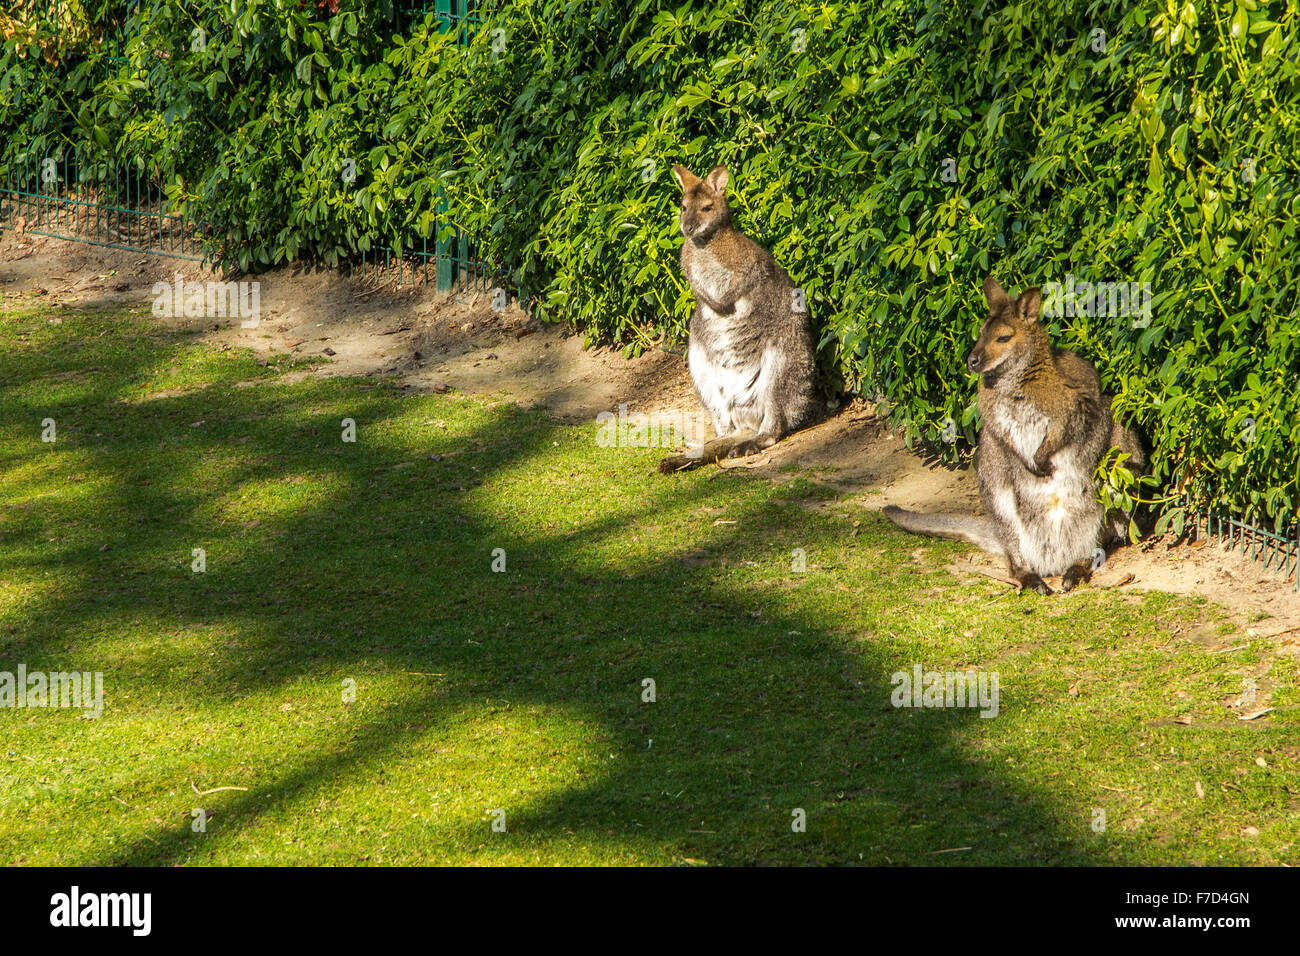 Deux kangourous dans un parc, Paris Banque D'Images